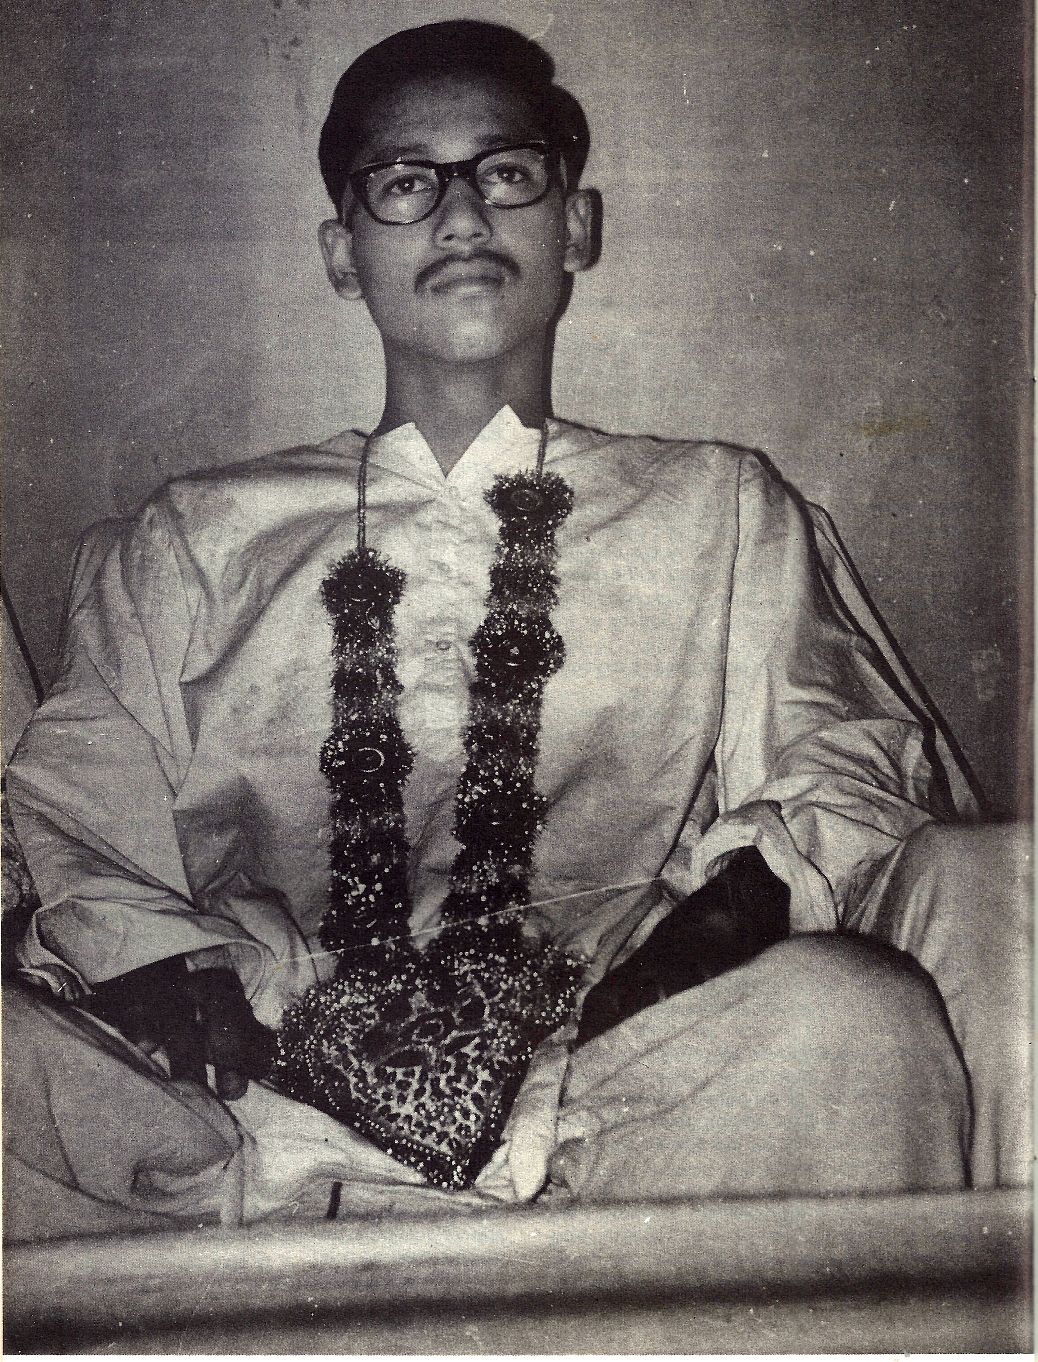 Bal Bhagwan Ji brother of Prem Rawat